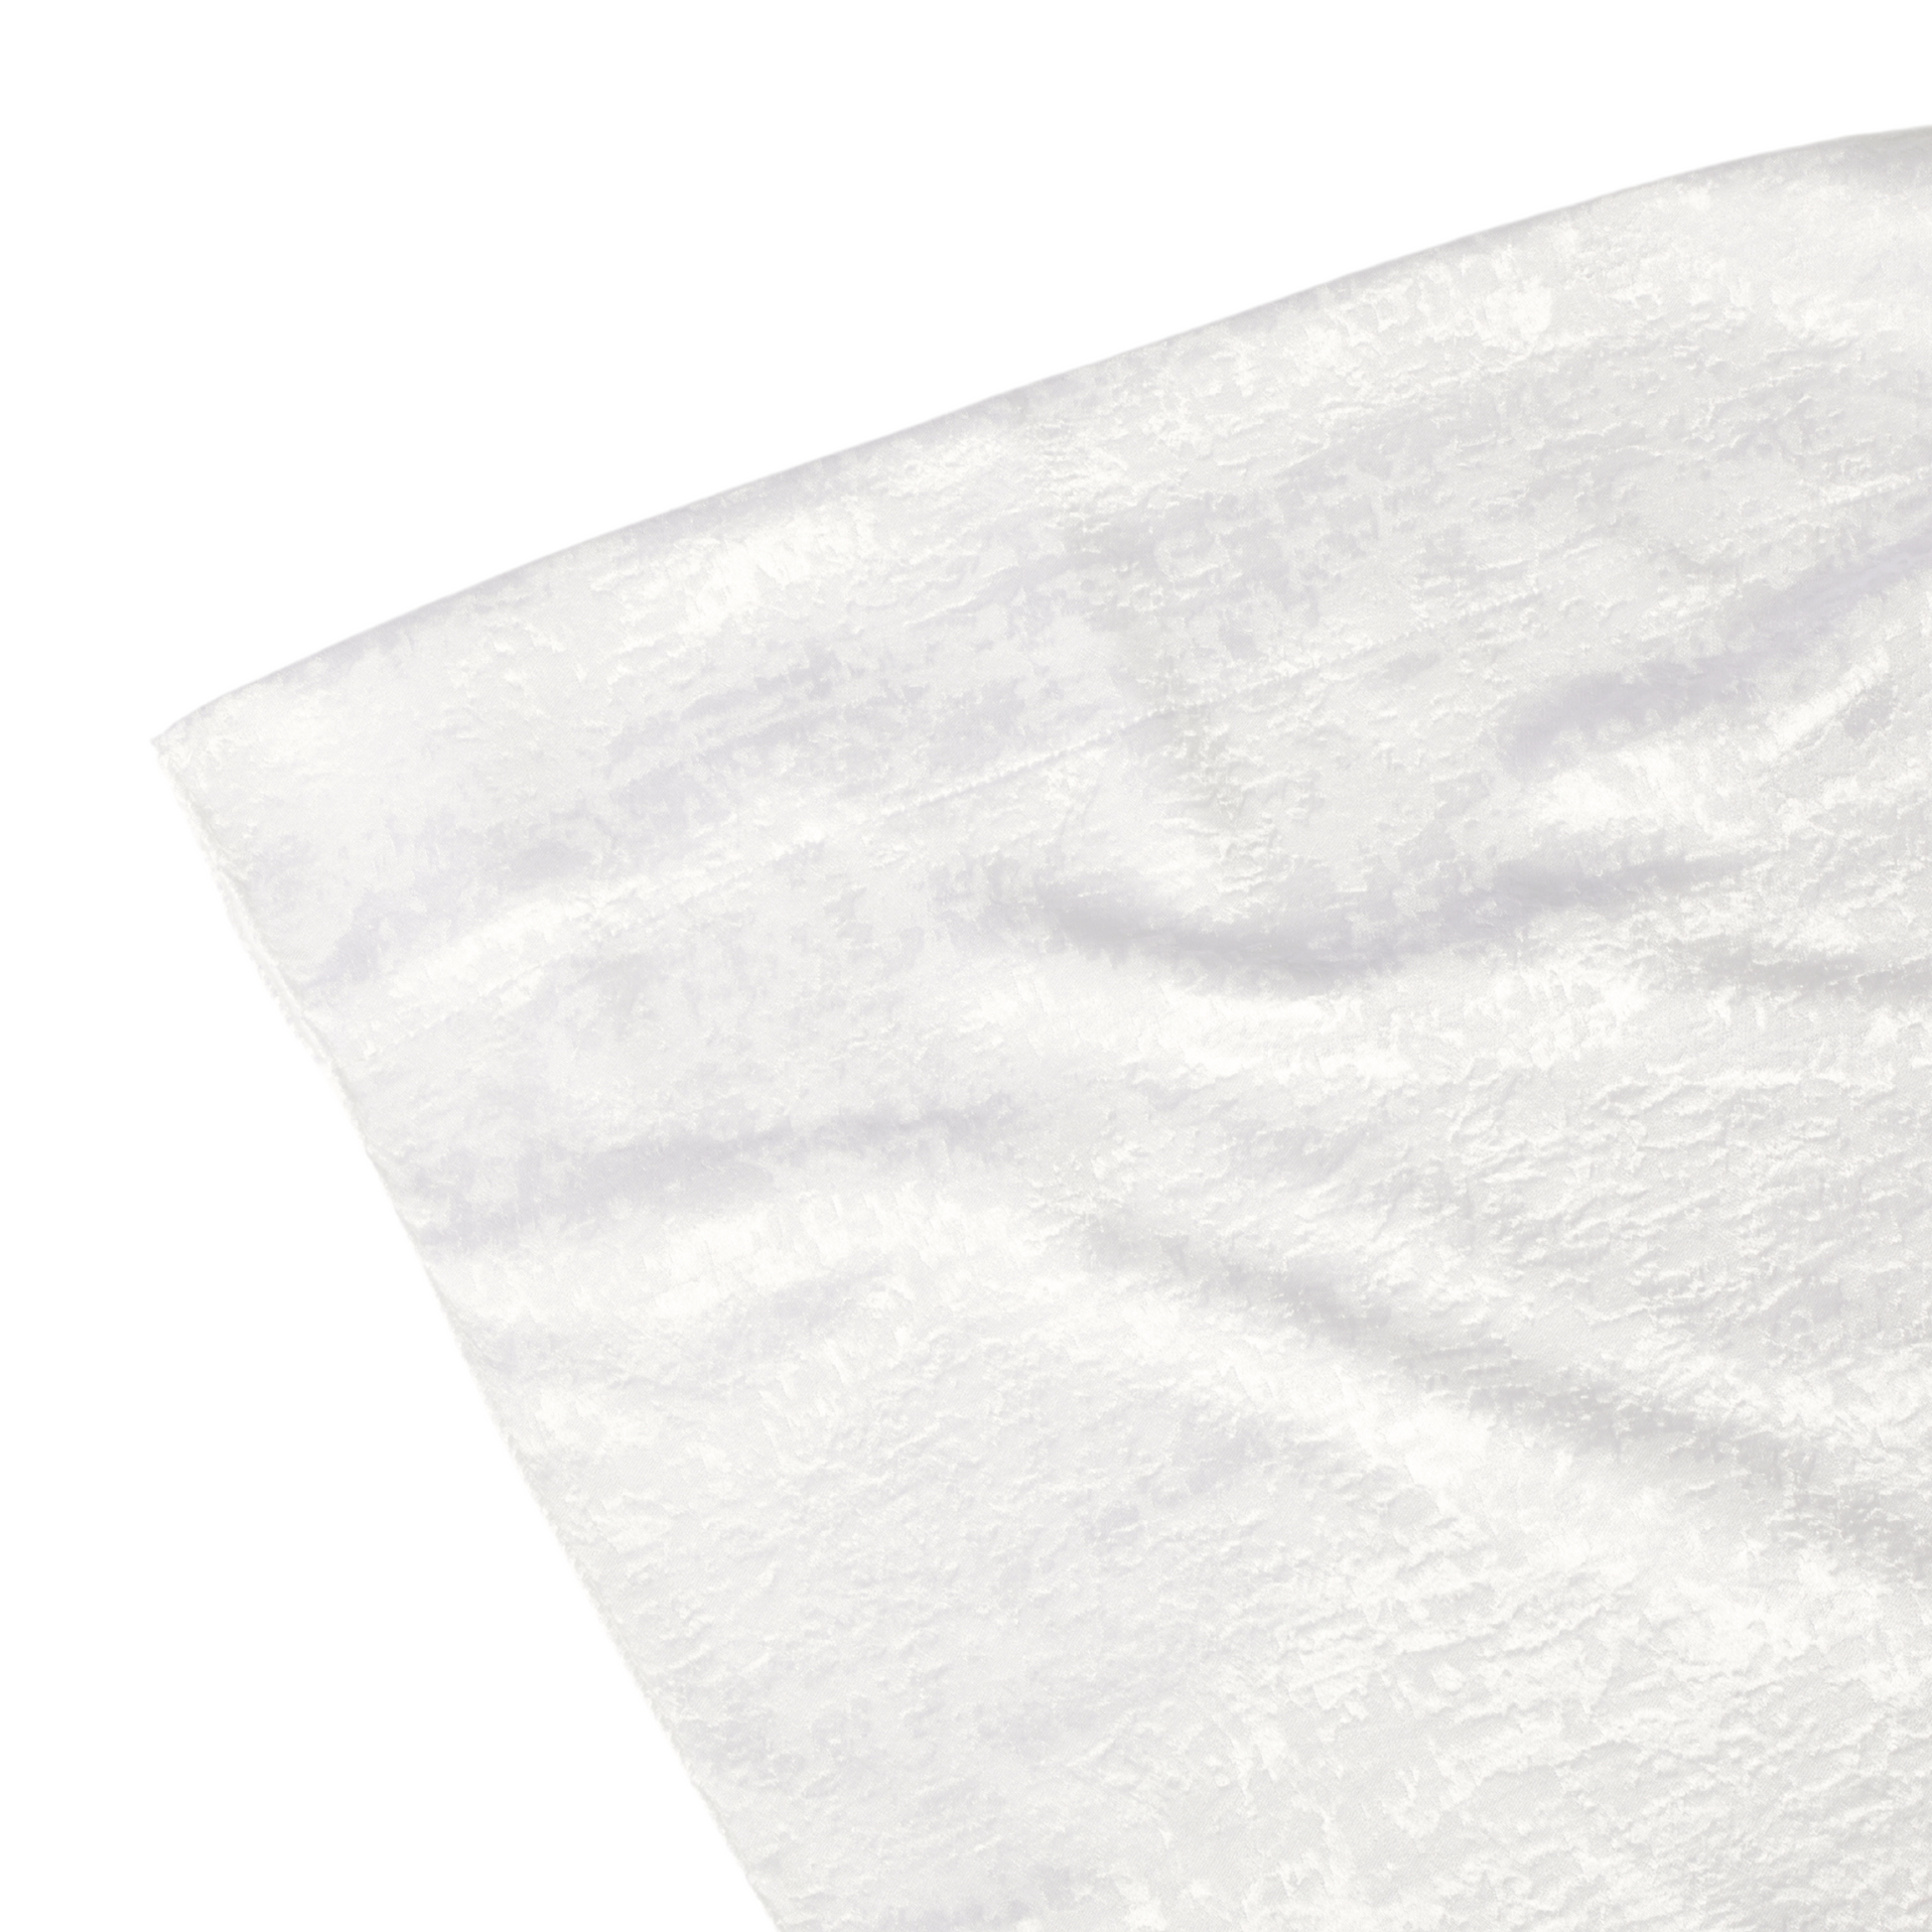 Crinkle Shimmer 10ft H x 52" W Drape/Backdrop Panel - Light Ivory/Off White